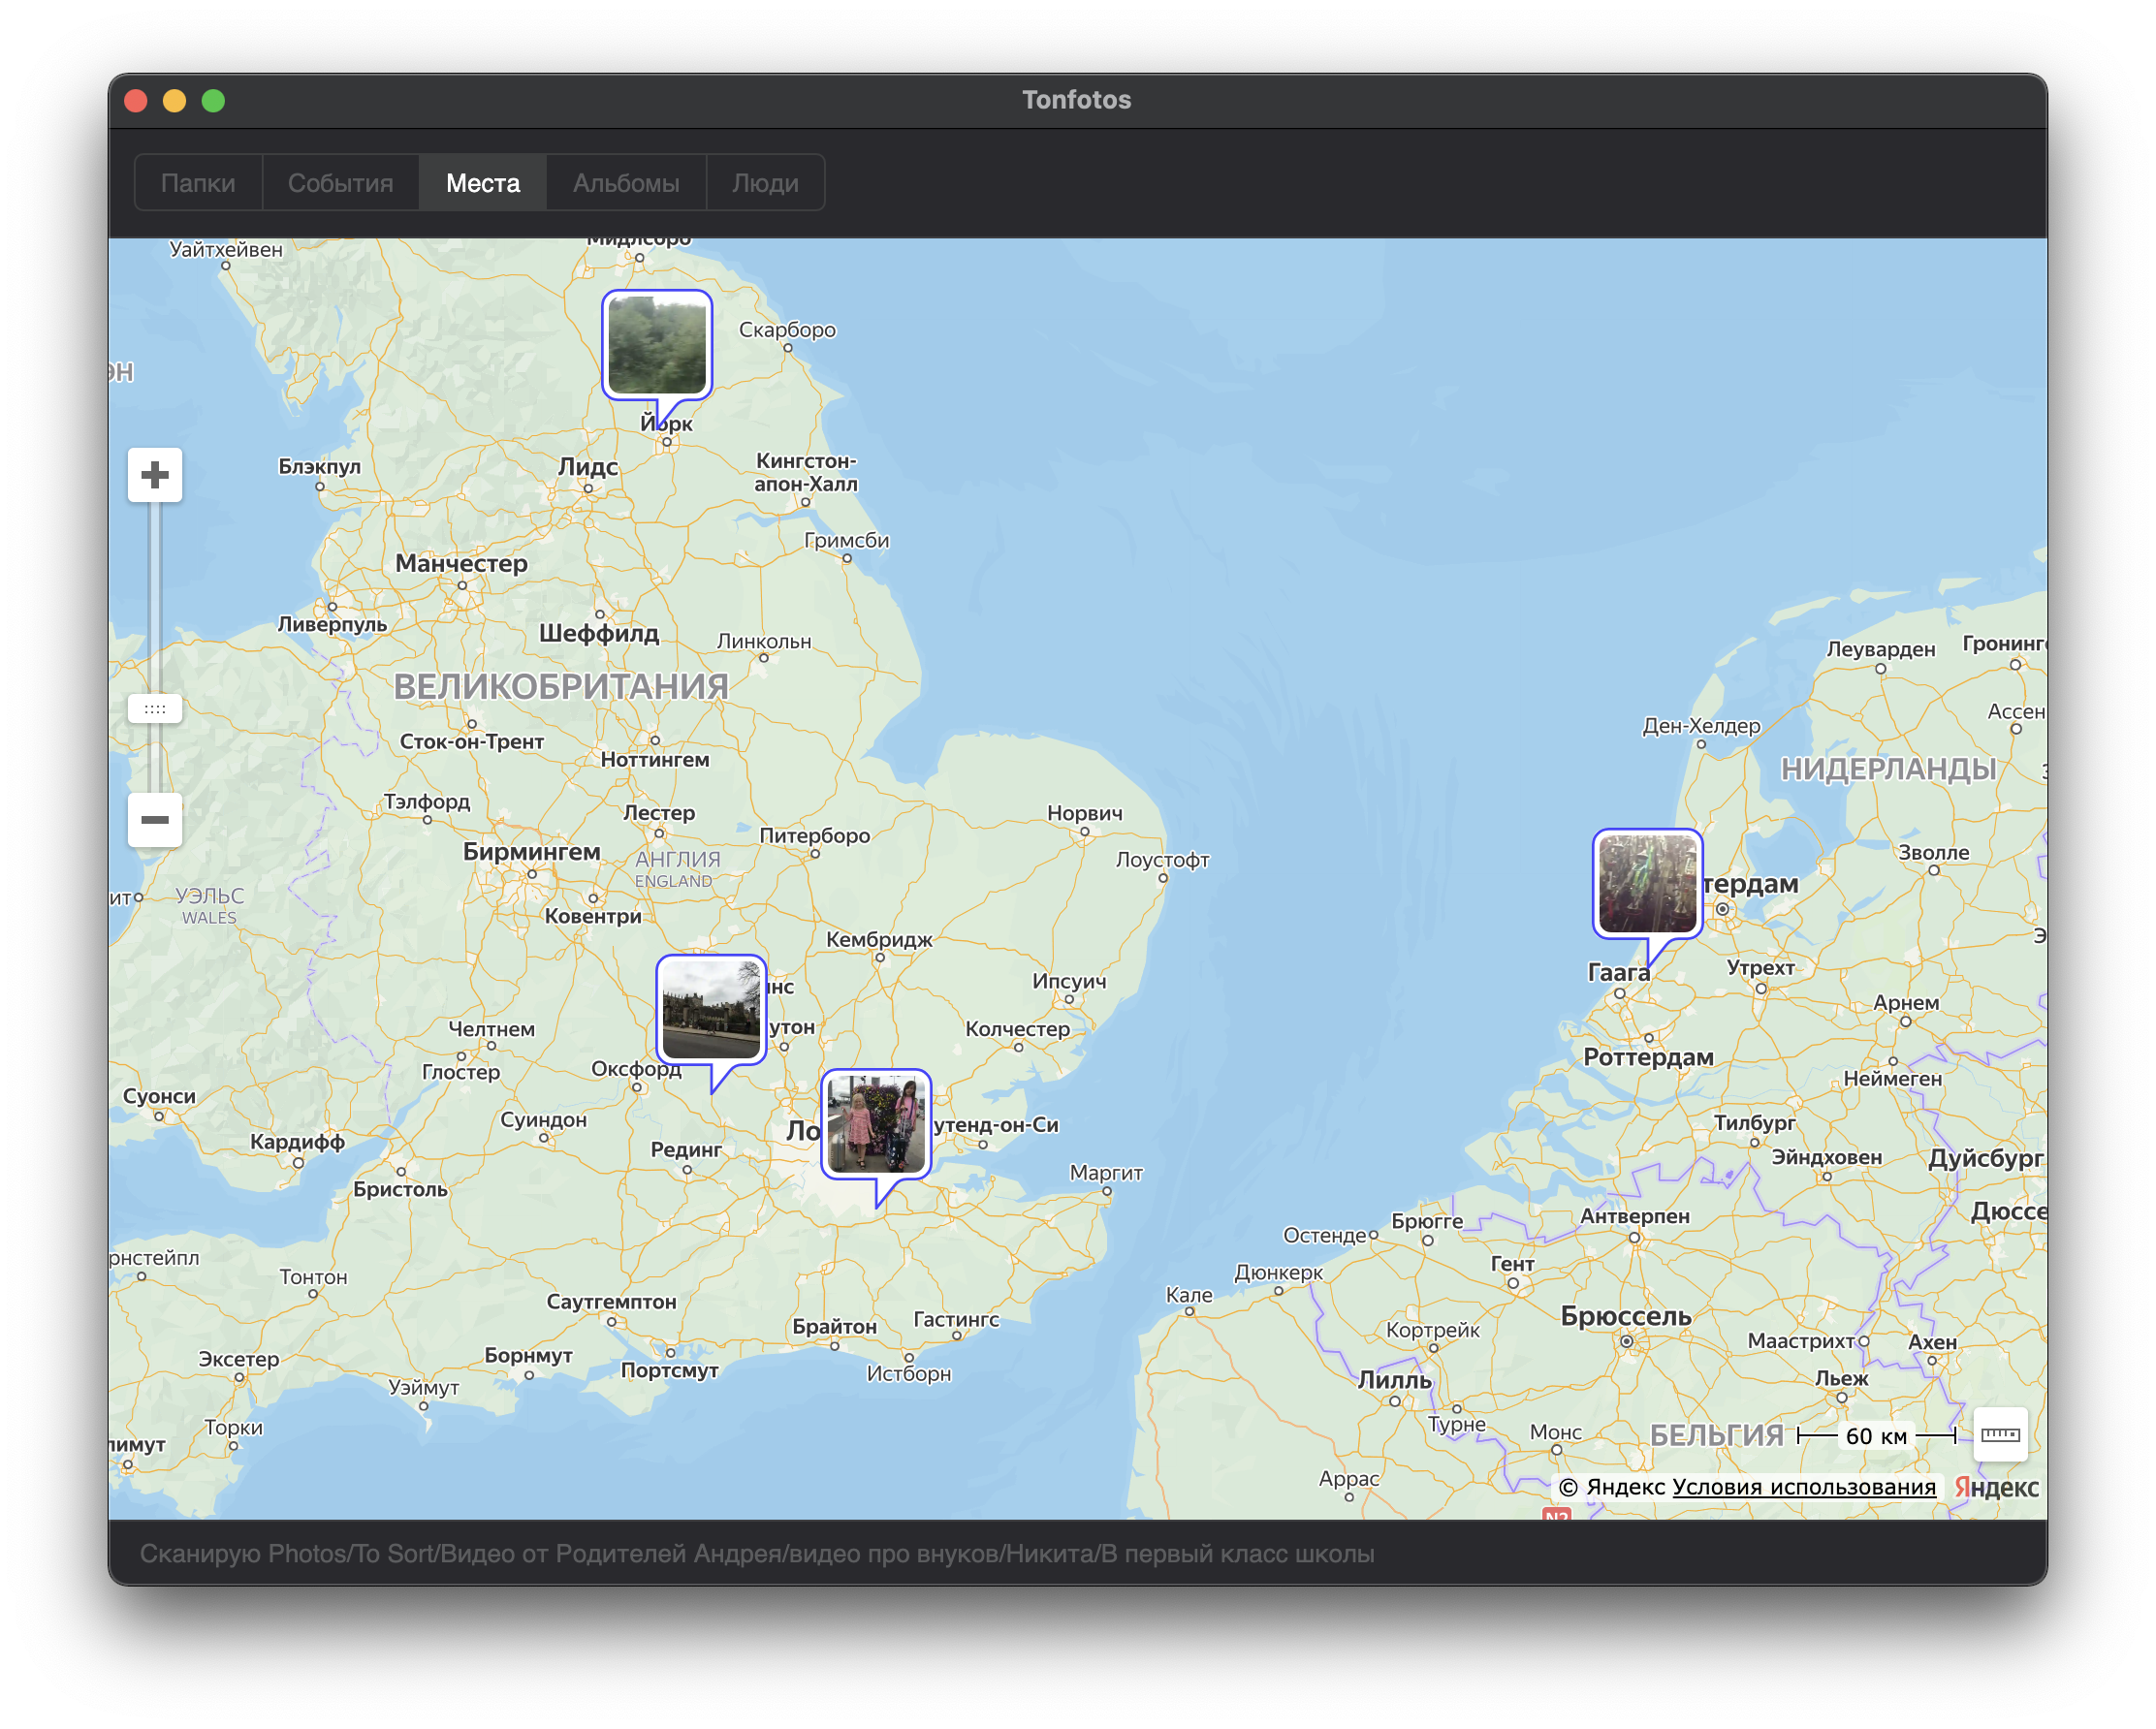 Tonfotos 0.9 beta : Tonfotos map view